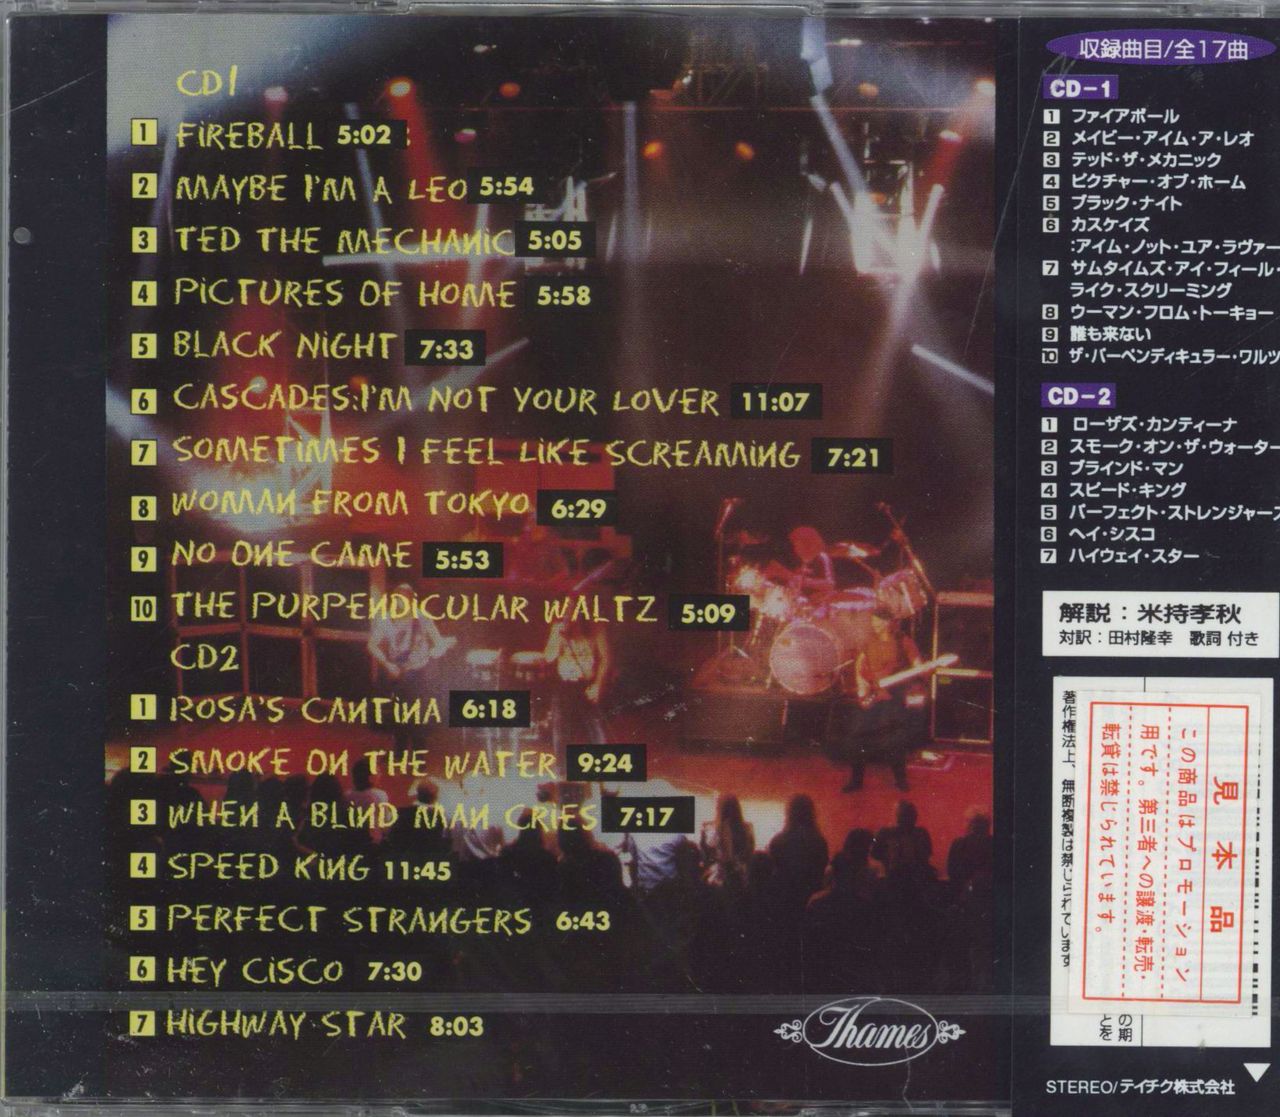 Deep Purple In Rock Japanese Promo CD album — RareVinyl.com